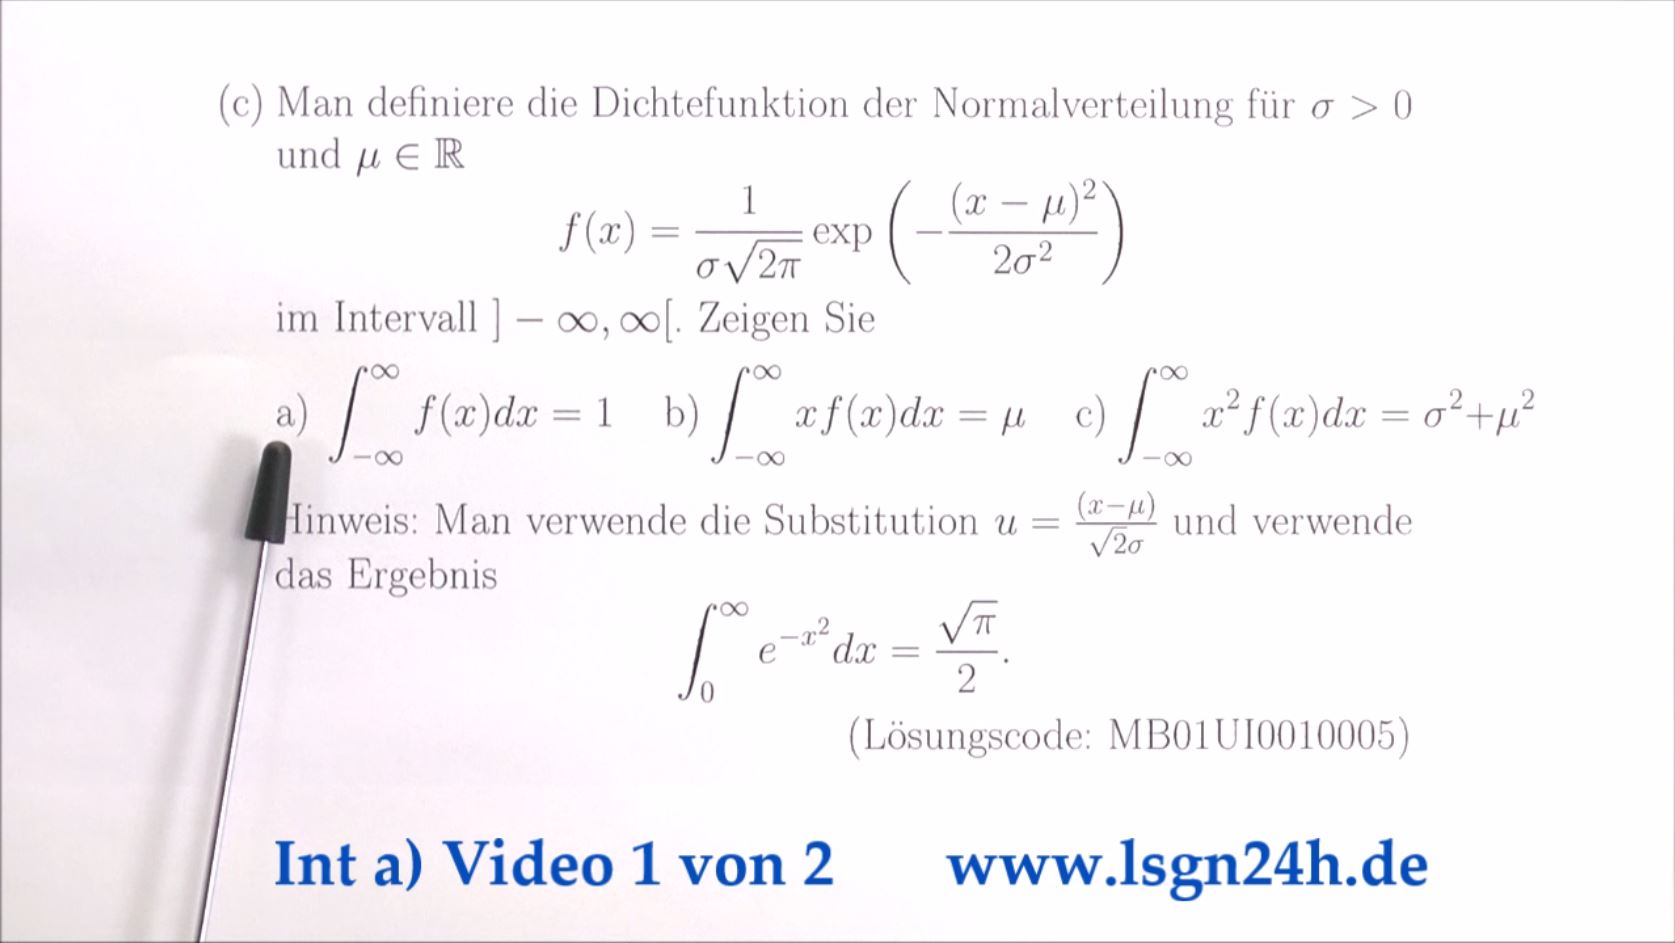 Integral über die Dichtefunktion der Normalverteilung mit Faktor 1  (1 von 2)